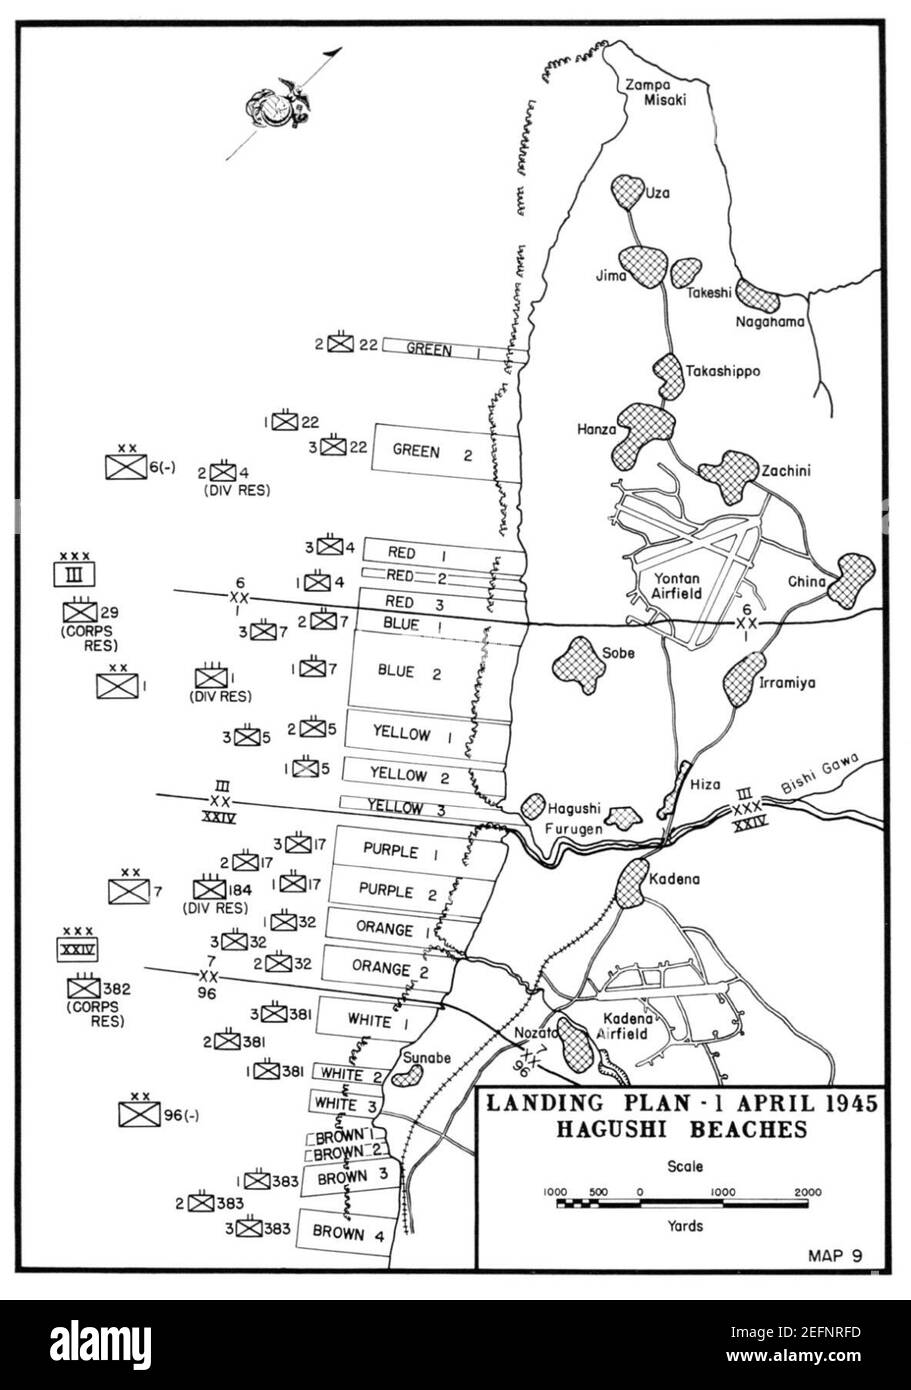 Plages d'invasion d'Okinawa, 1er avril 1945 - carte. Banque D'Images